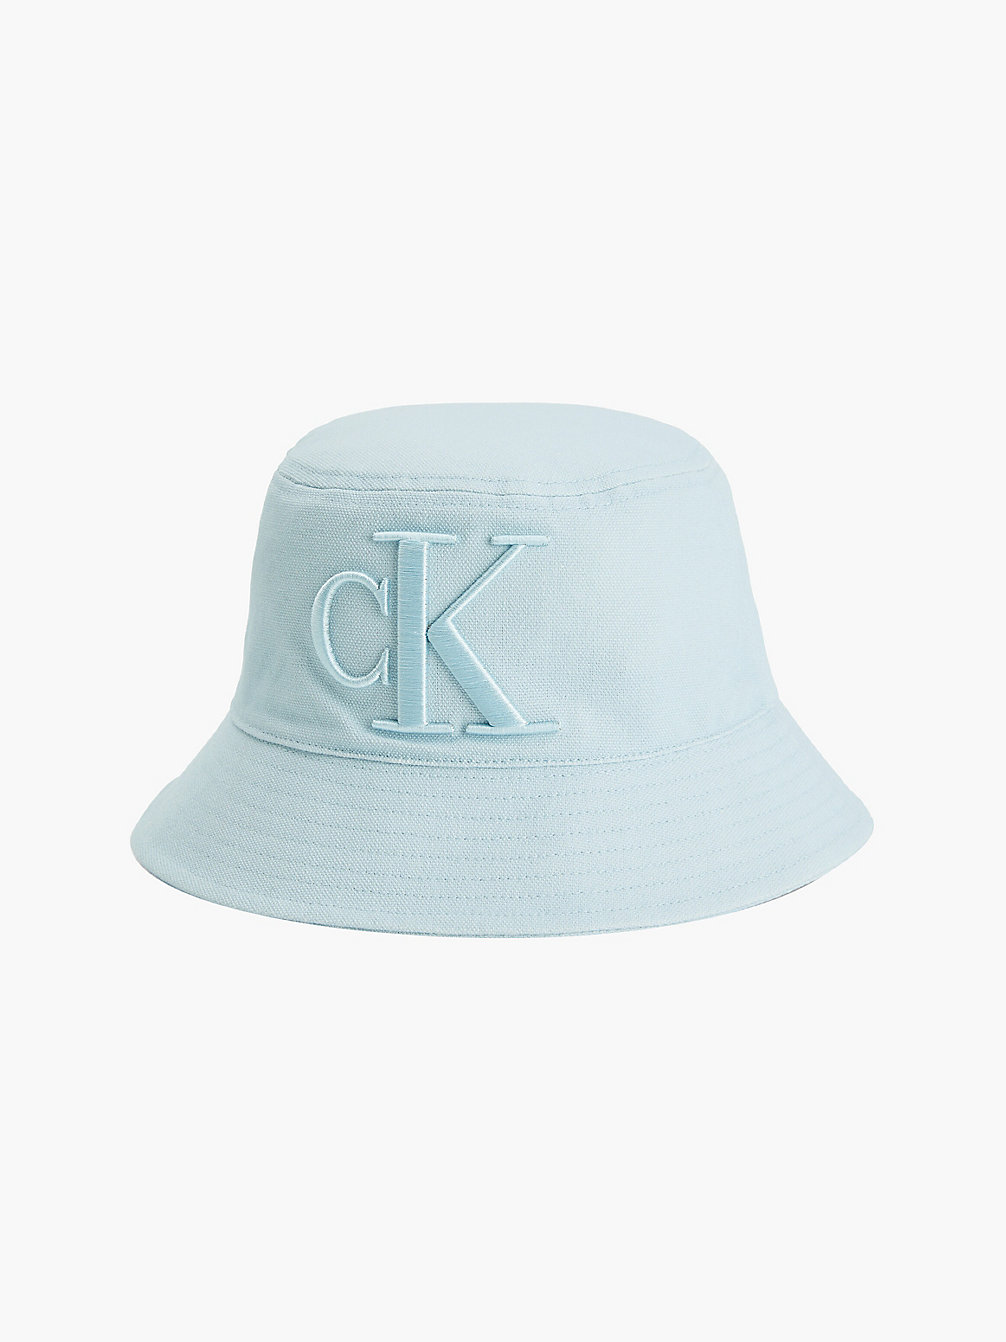 KEEPSAKE BLUE Bucket Hat Aus Baumwolle Für Kinder undefined kids unisex Calvin Klein